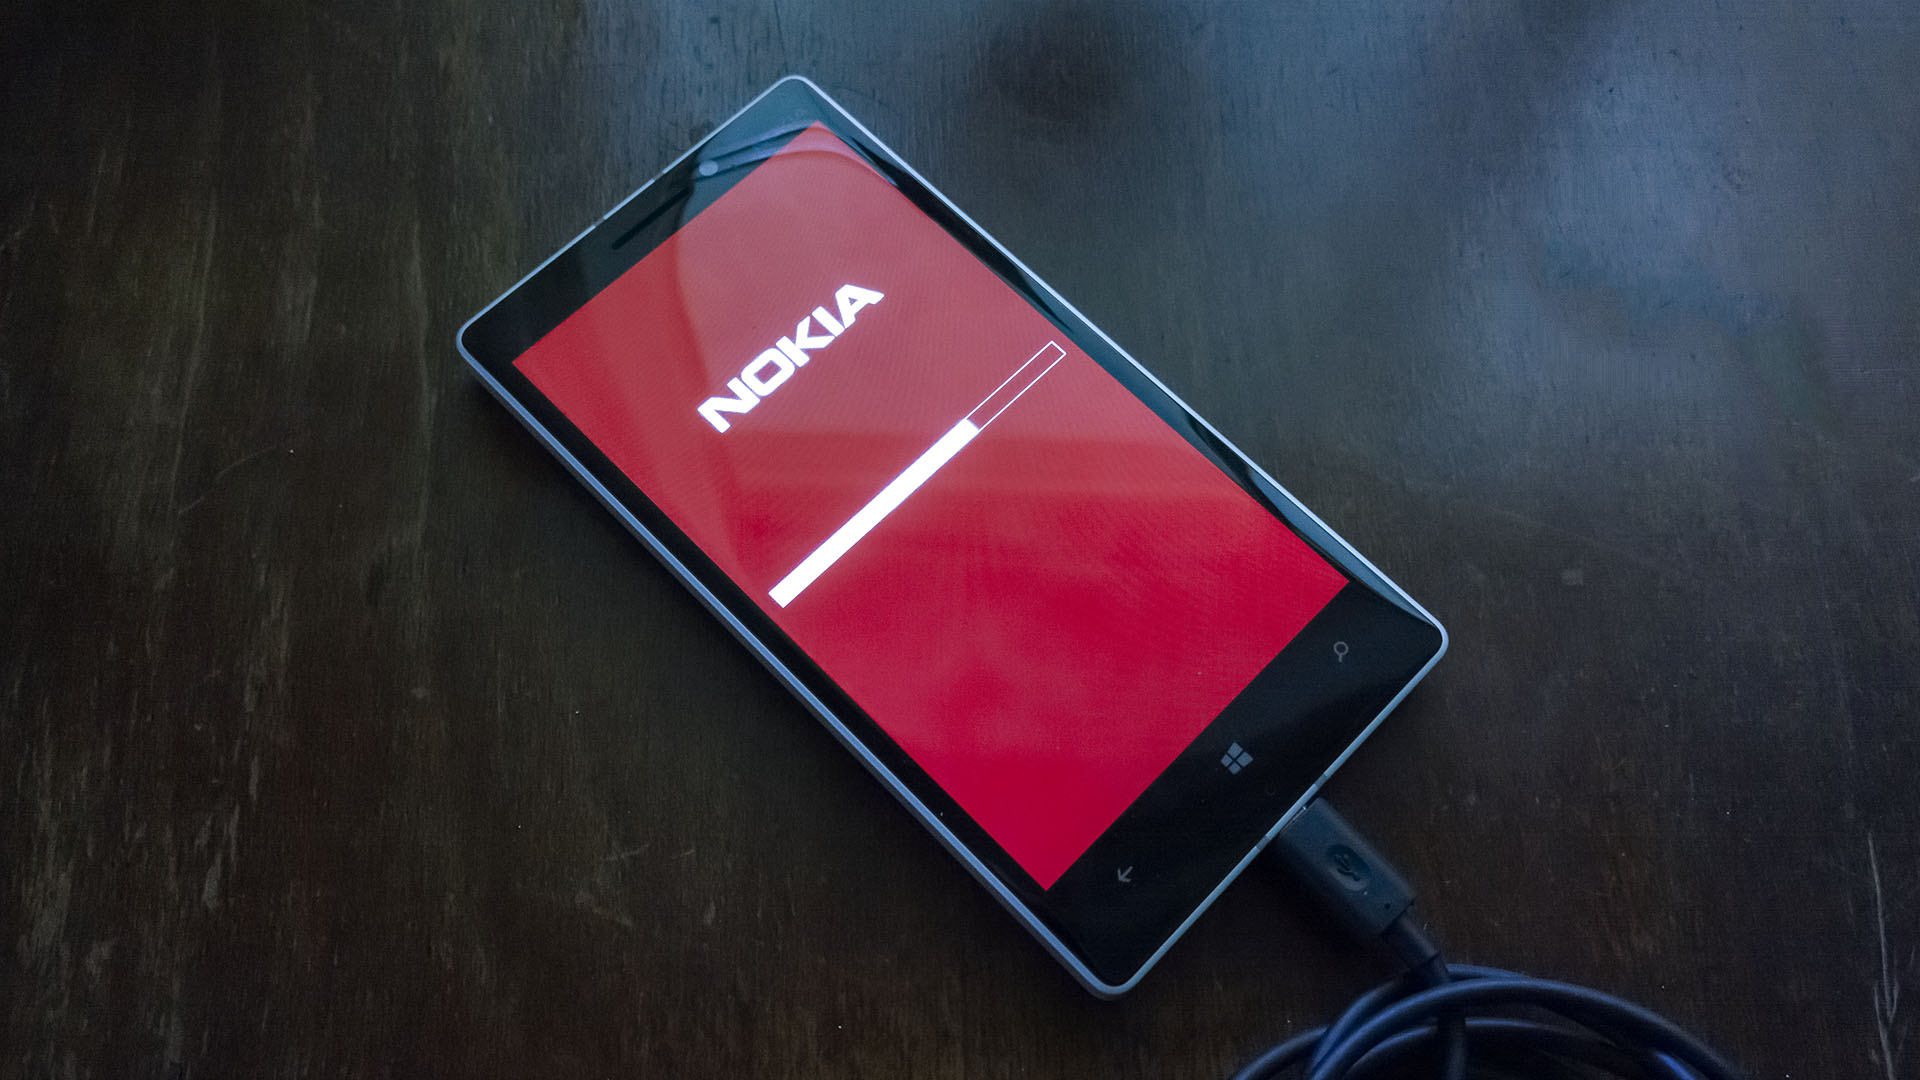 Windows Phone Lumia Flash